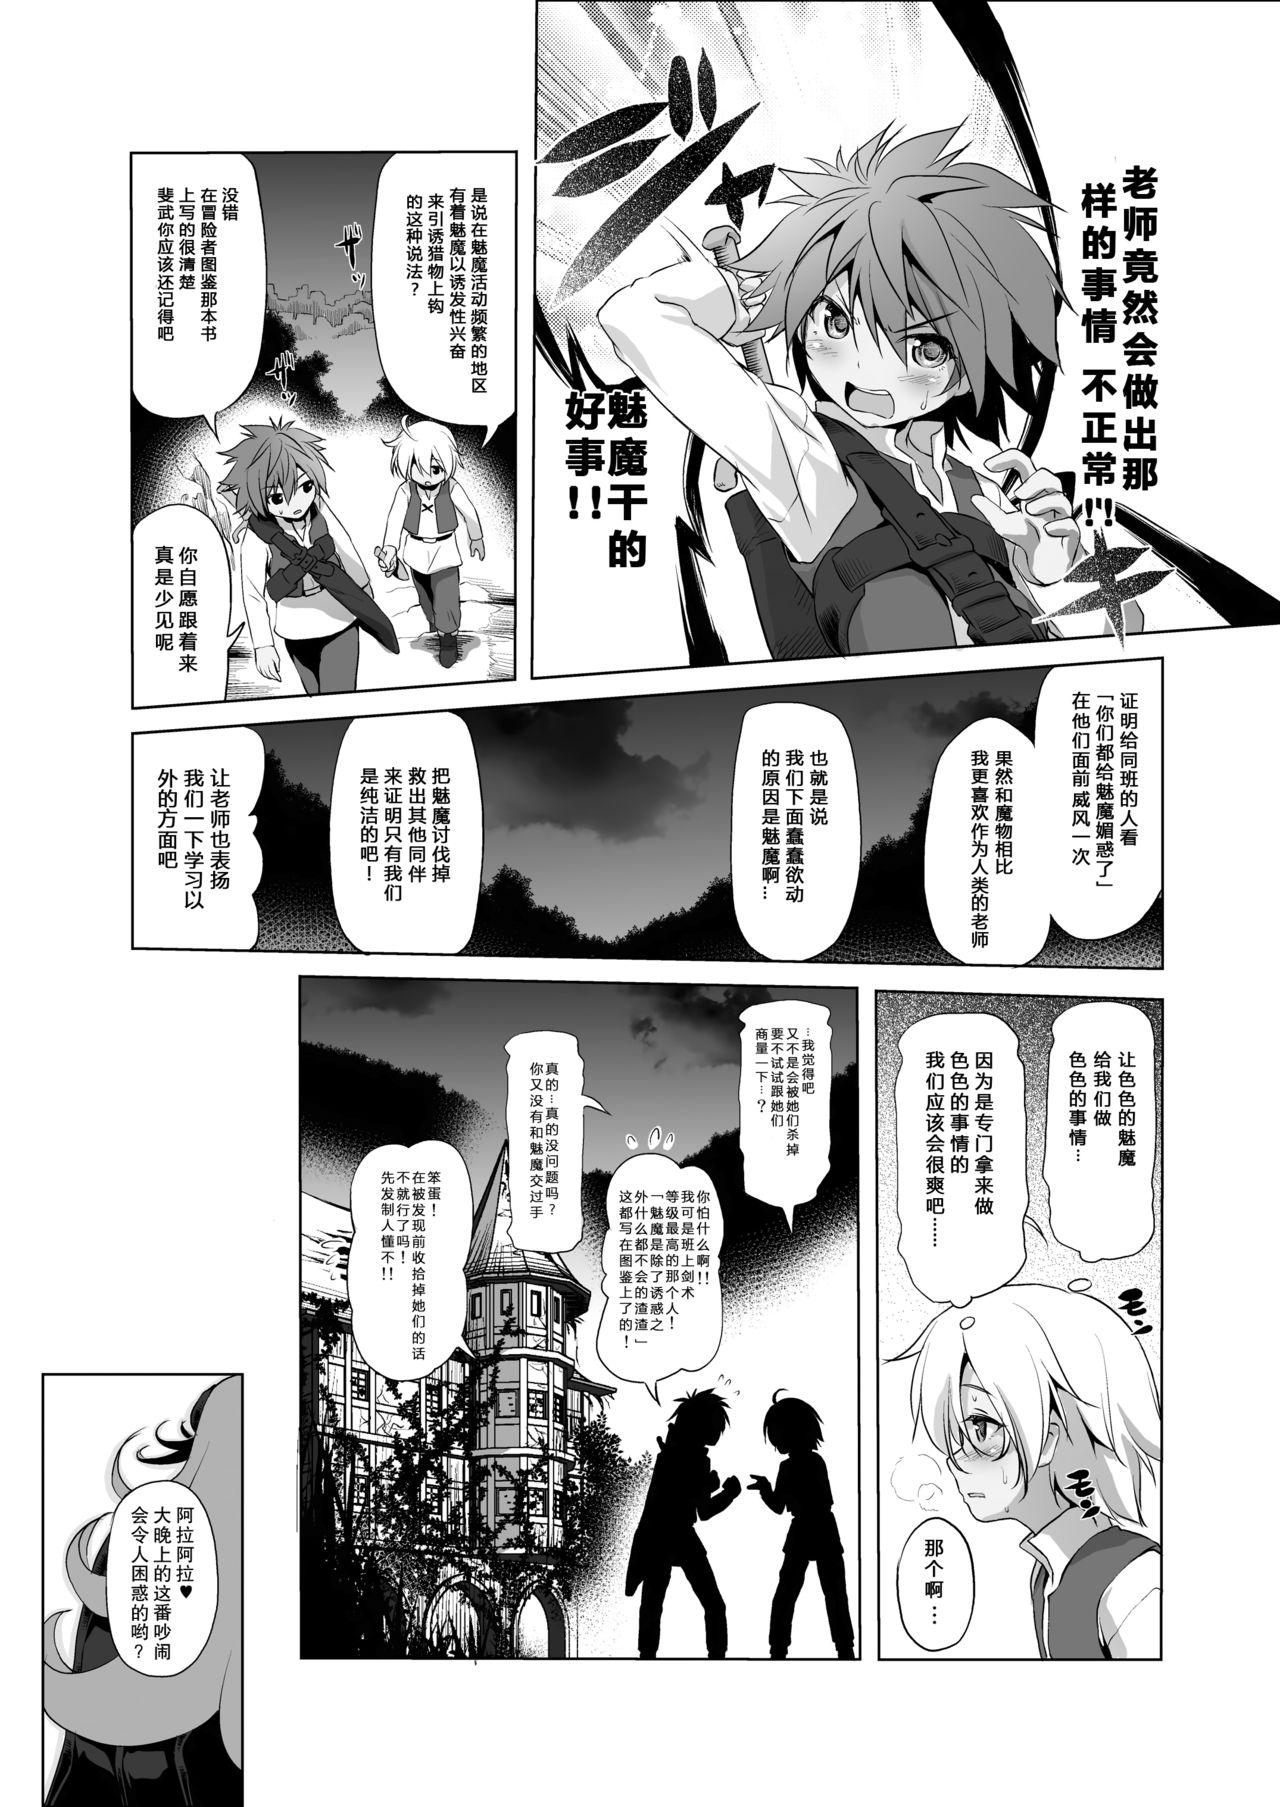 Bound Makotoni Zannen desu ga Bouken no Sho 3 wa Kiete Shimaimashita. - Original Gaycum - Page 11